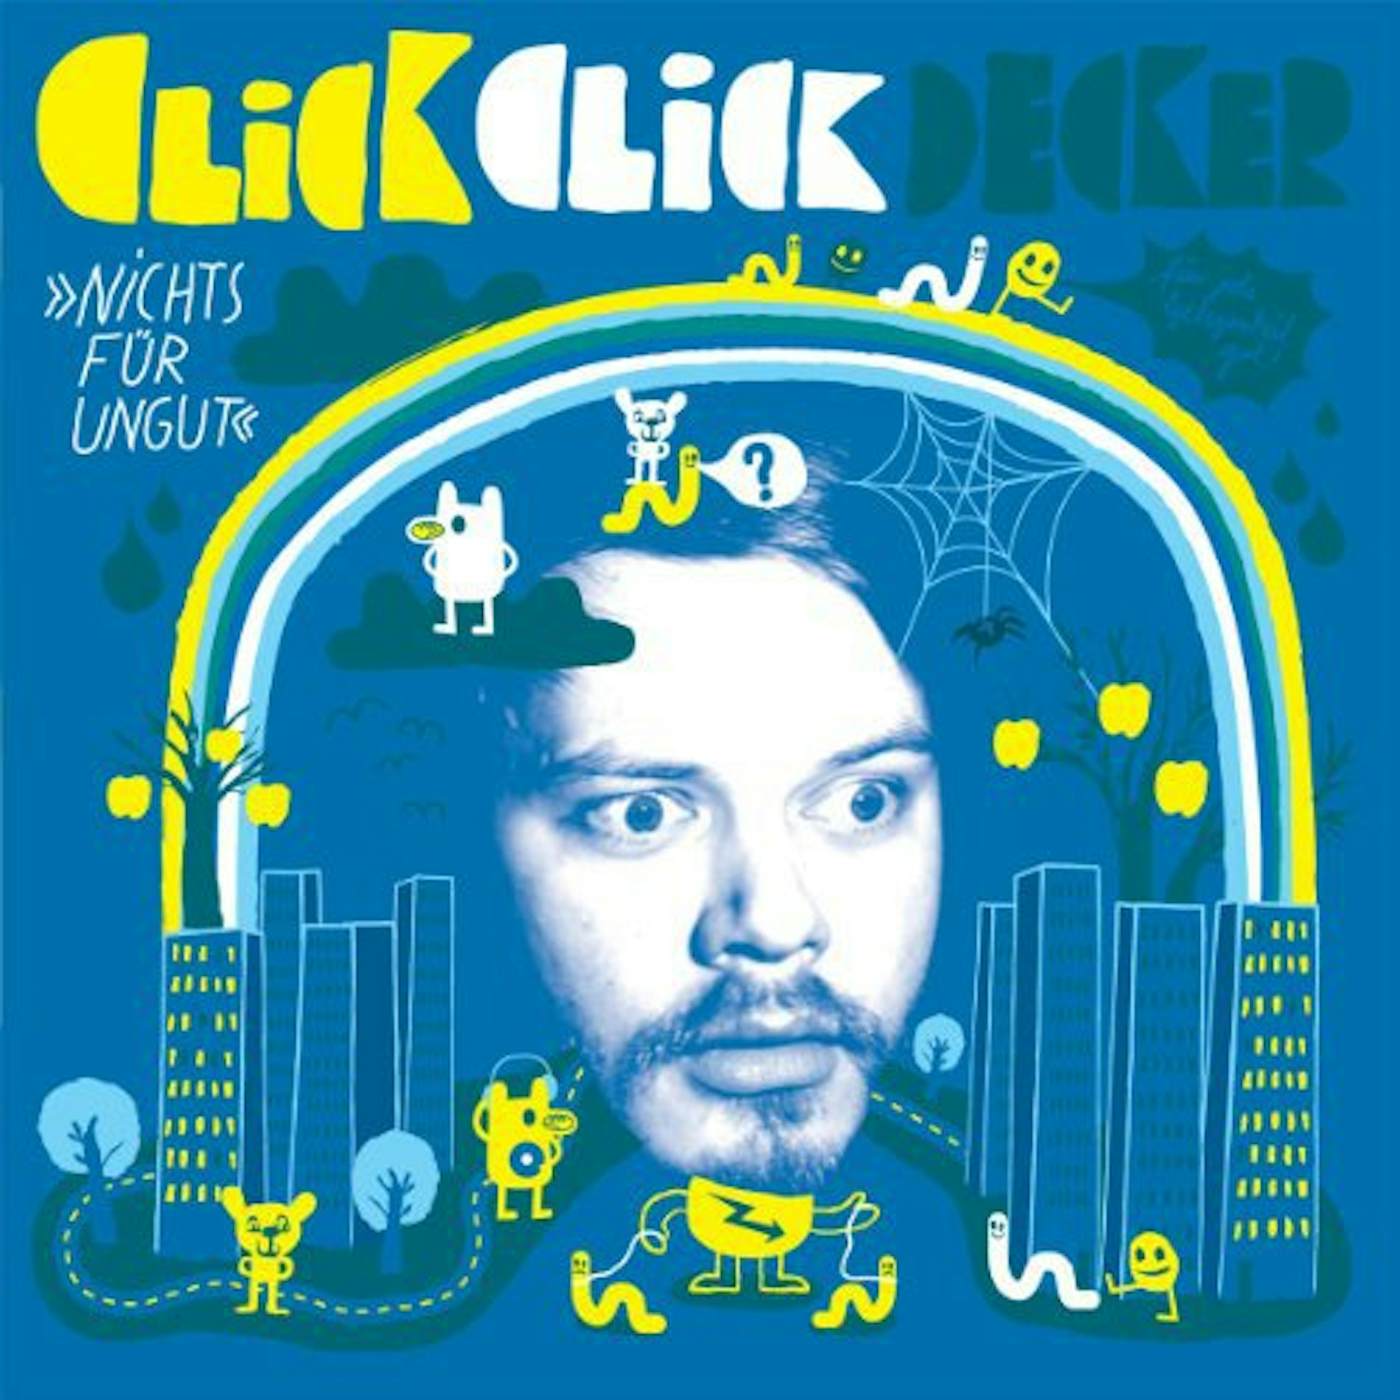 ClickClickDecker NICHTS FUER UNGUT Vinyl Record